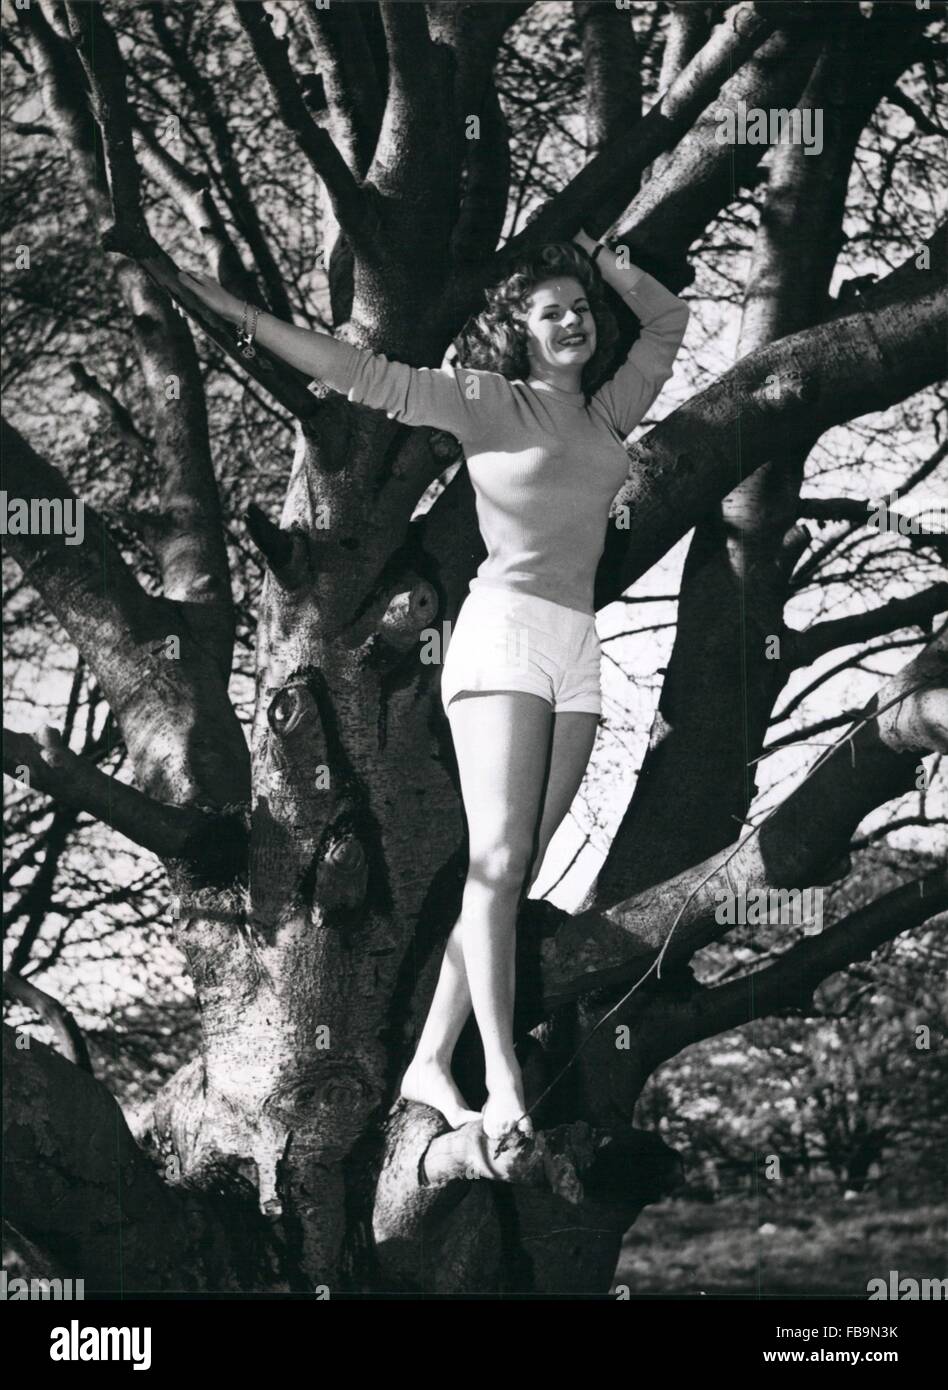 1962 - wir verneigen uns an dieses Mädchen von den Zweigen: zwei Arten von Gliedmaßen hier. Die formschöne Glieder der Baum Liebhaber Marilyn Davis, und die Glieder von den hohen Bäumen, in denen sie liebt es, sich zu entfalten. Marilyn ist wie zu Hause in den Wäldern als vor den Fernsehkameras - aber sie lieber unter freiem Himmel Leben des ersteren. © Keystone Bilder USA/ZUMAPRESS.com/Alamy Live-Nachrichten Stockfoto